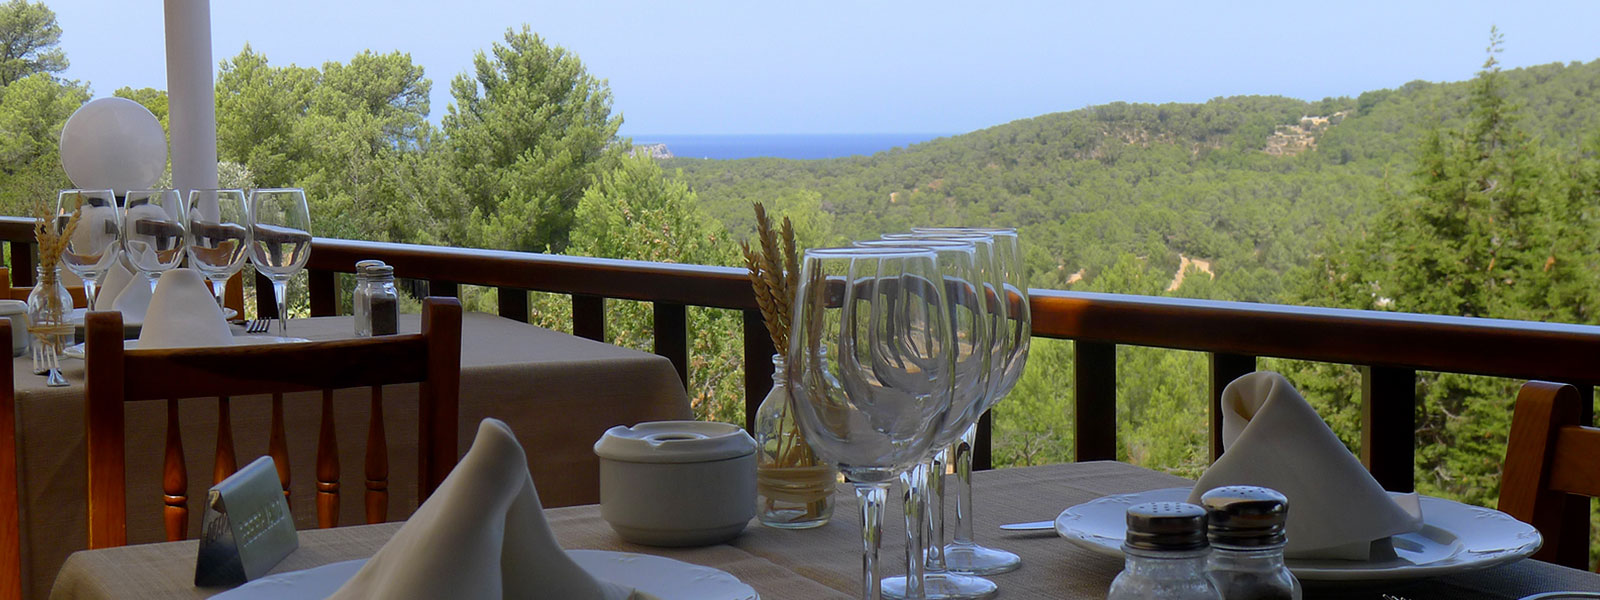 Terraza trasera exterior en Restaurant S'Espartar de Sant Josep de sa Talaia Ibiza